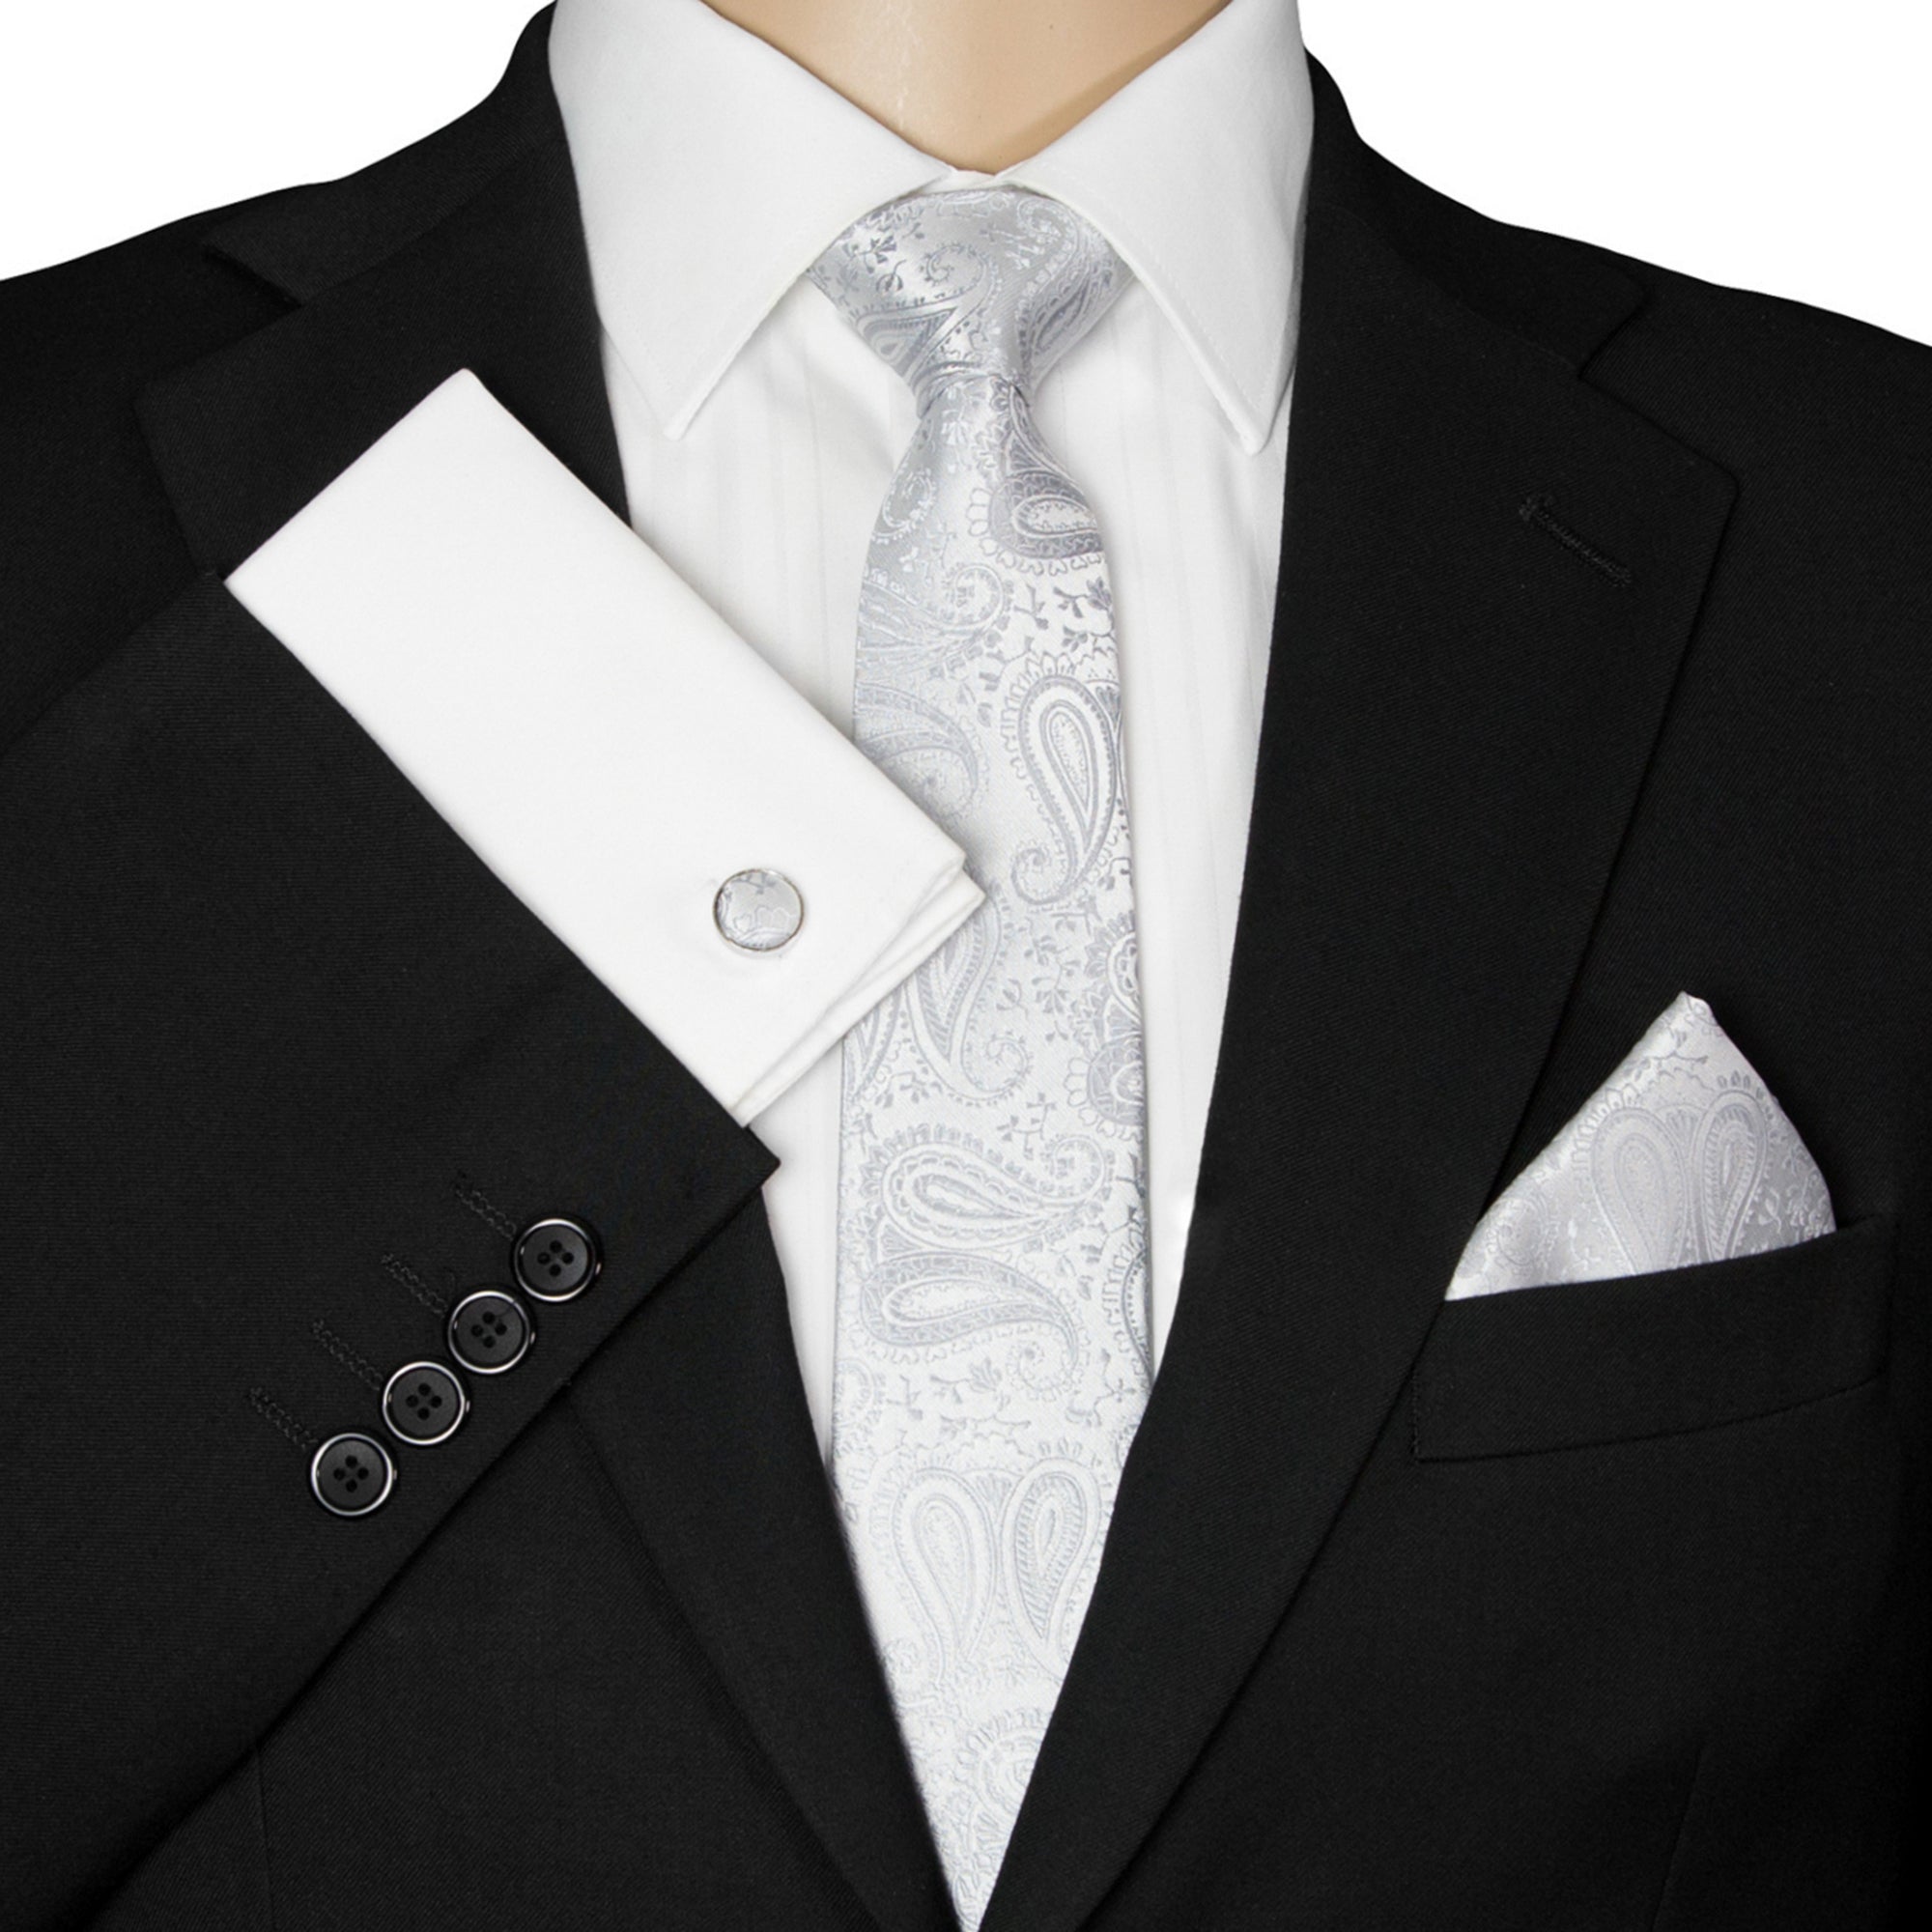 Sie Krawatten für Paisley-Krawatte Designt - GASSANI Silber-Graue | GASSANIshop.de Kaufen